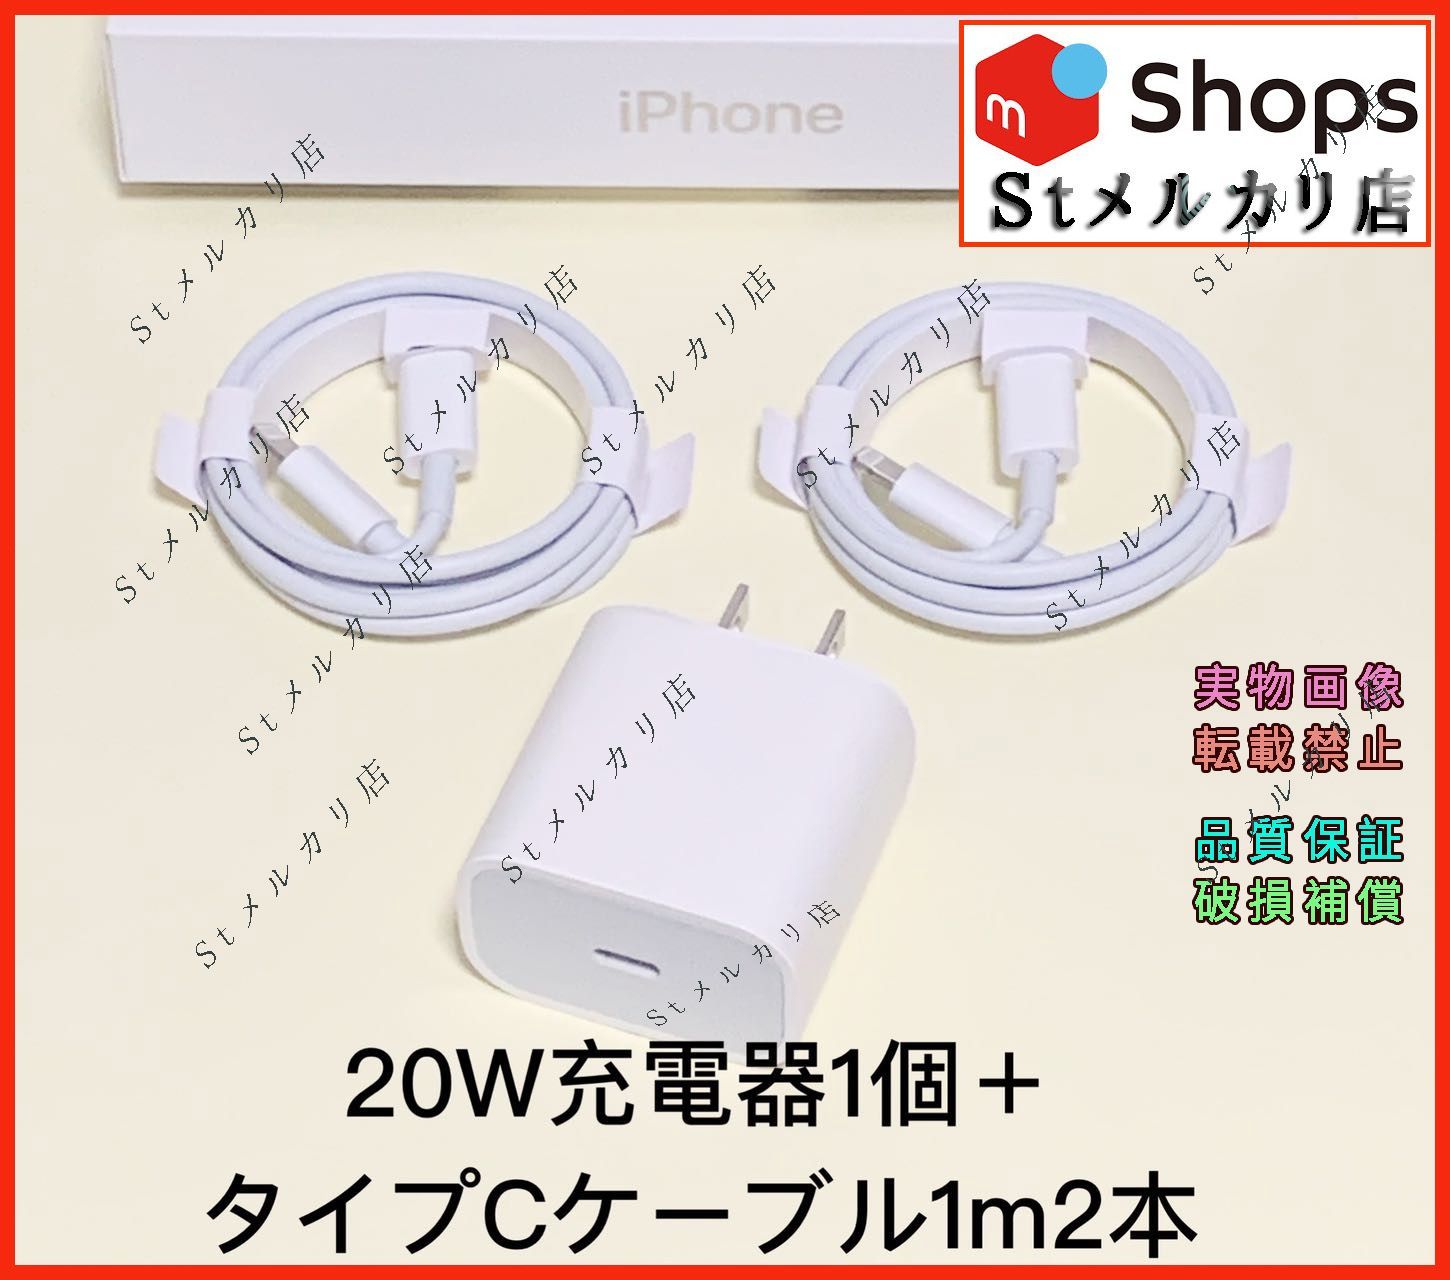 日本全国 送料無料 3本 iPhone 充電器 1m ライトニングケーブル 純正品